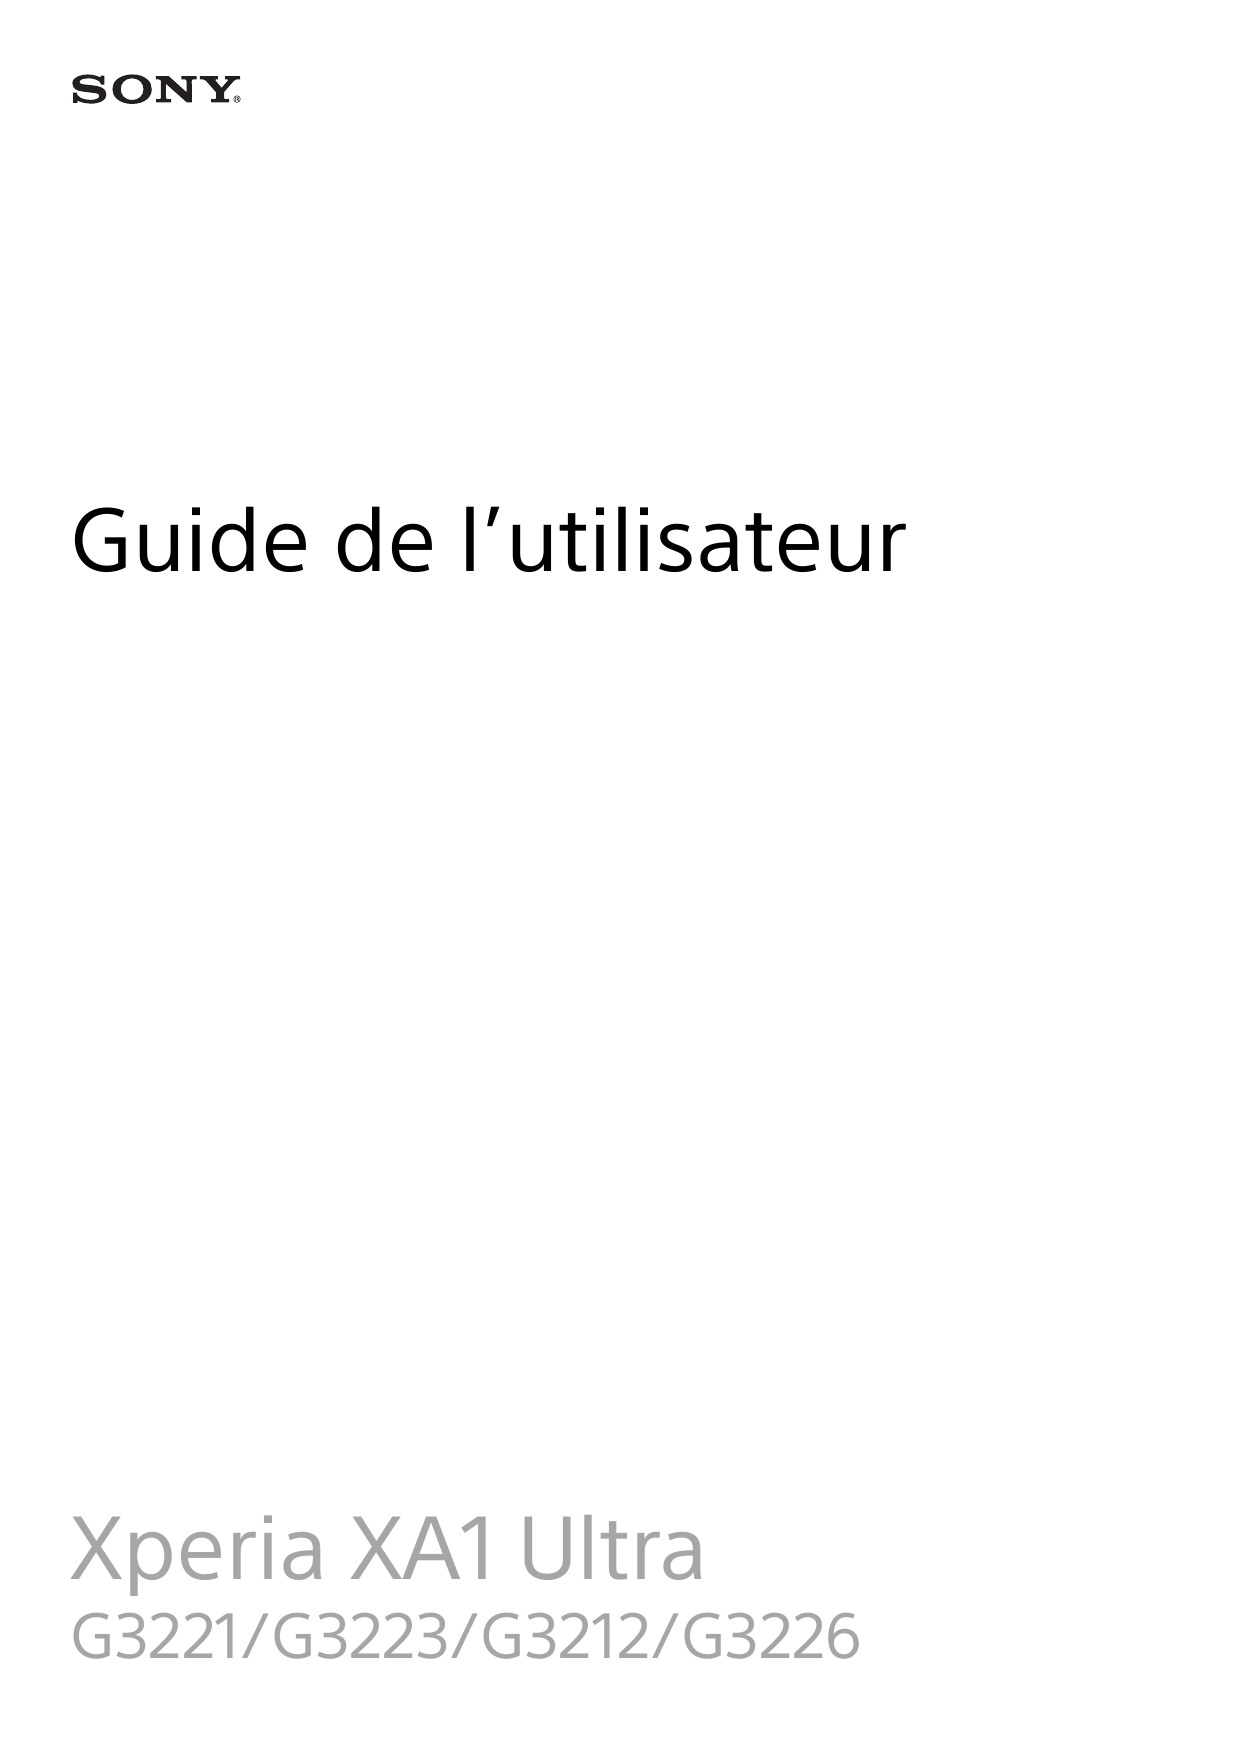 Guide de l’utilisateurXperia XA1 UltraG3221/G3223/G3212/G3226